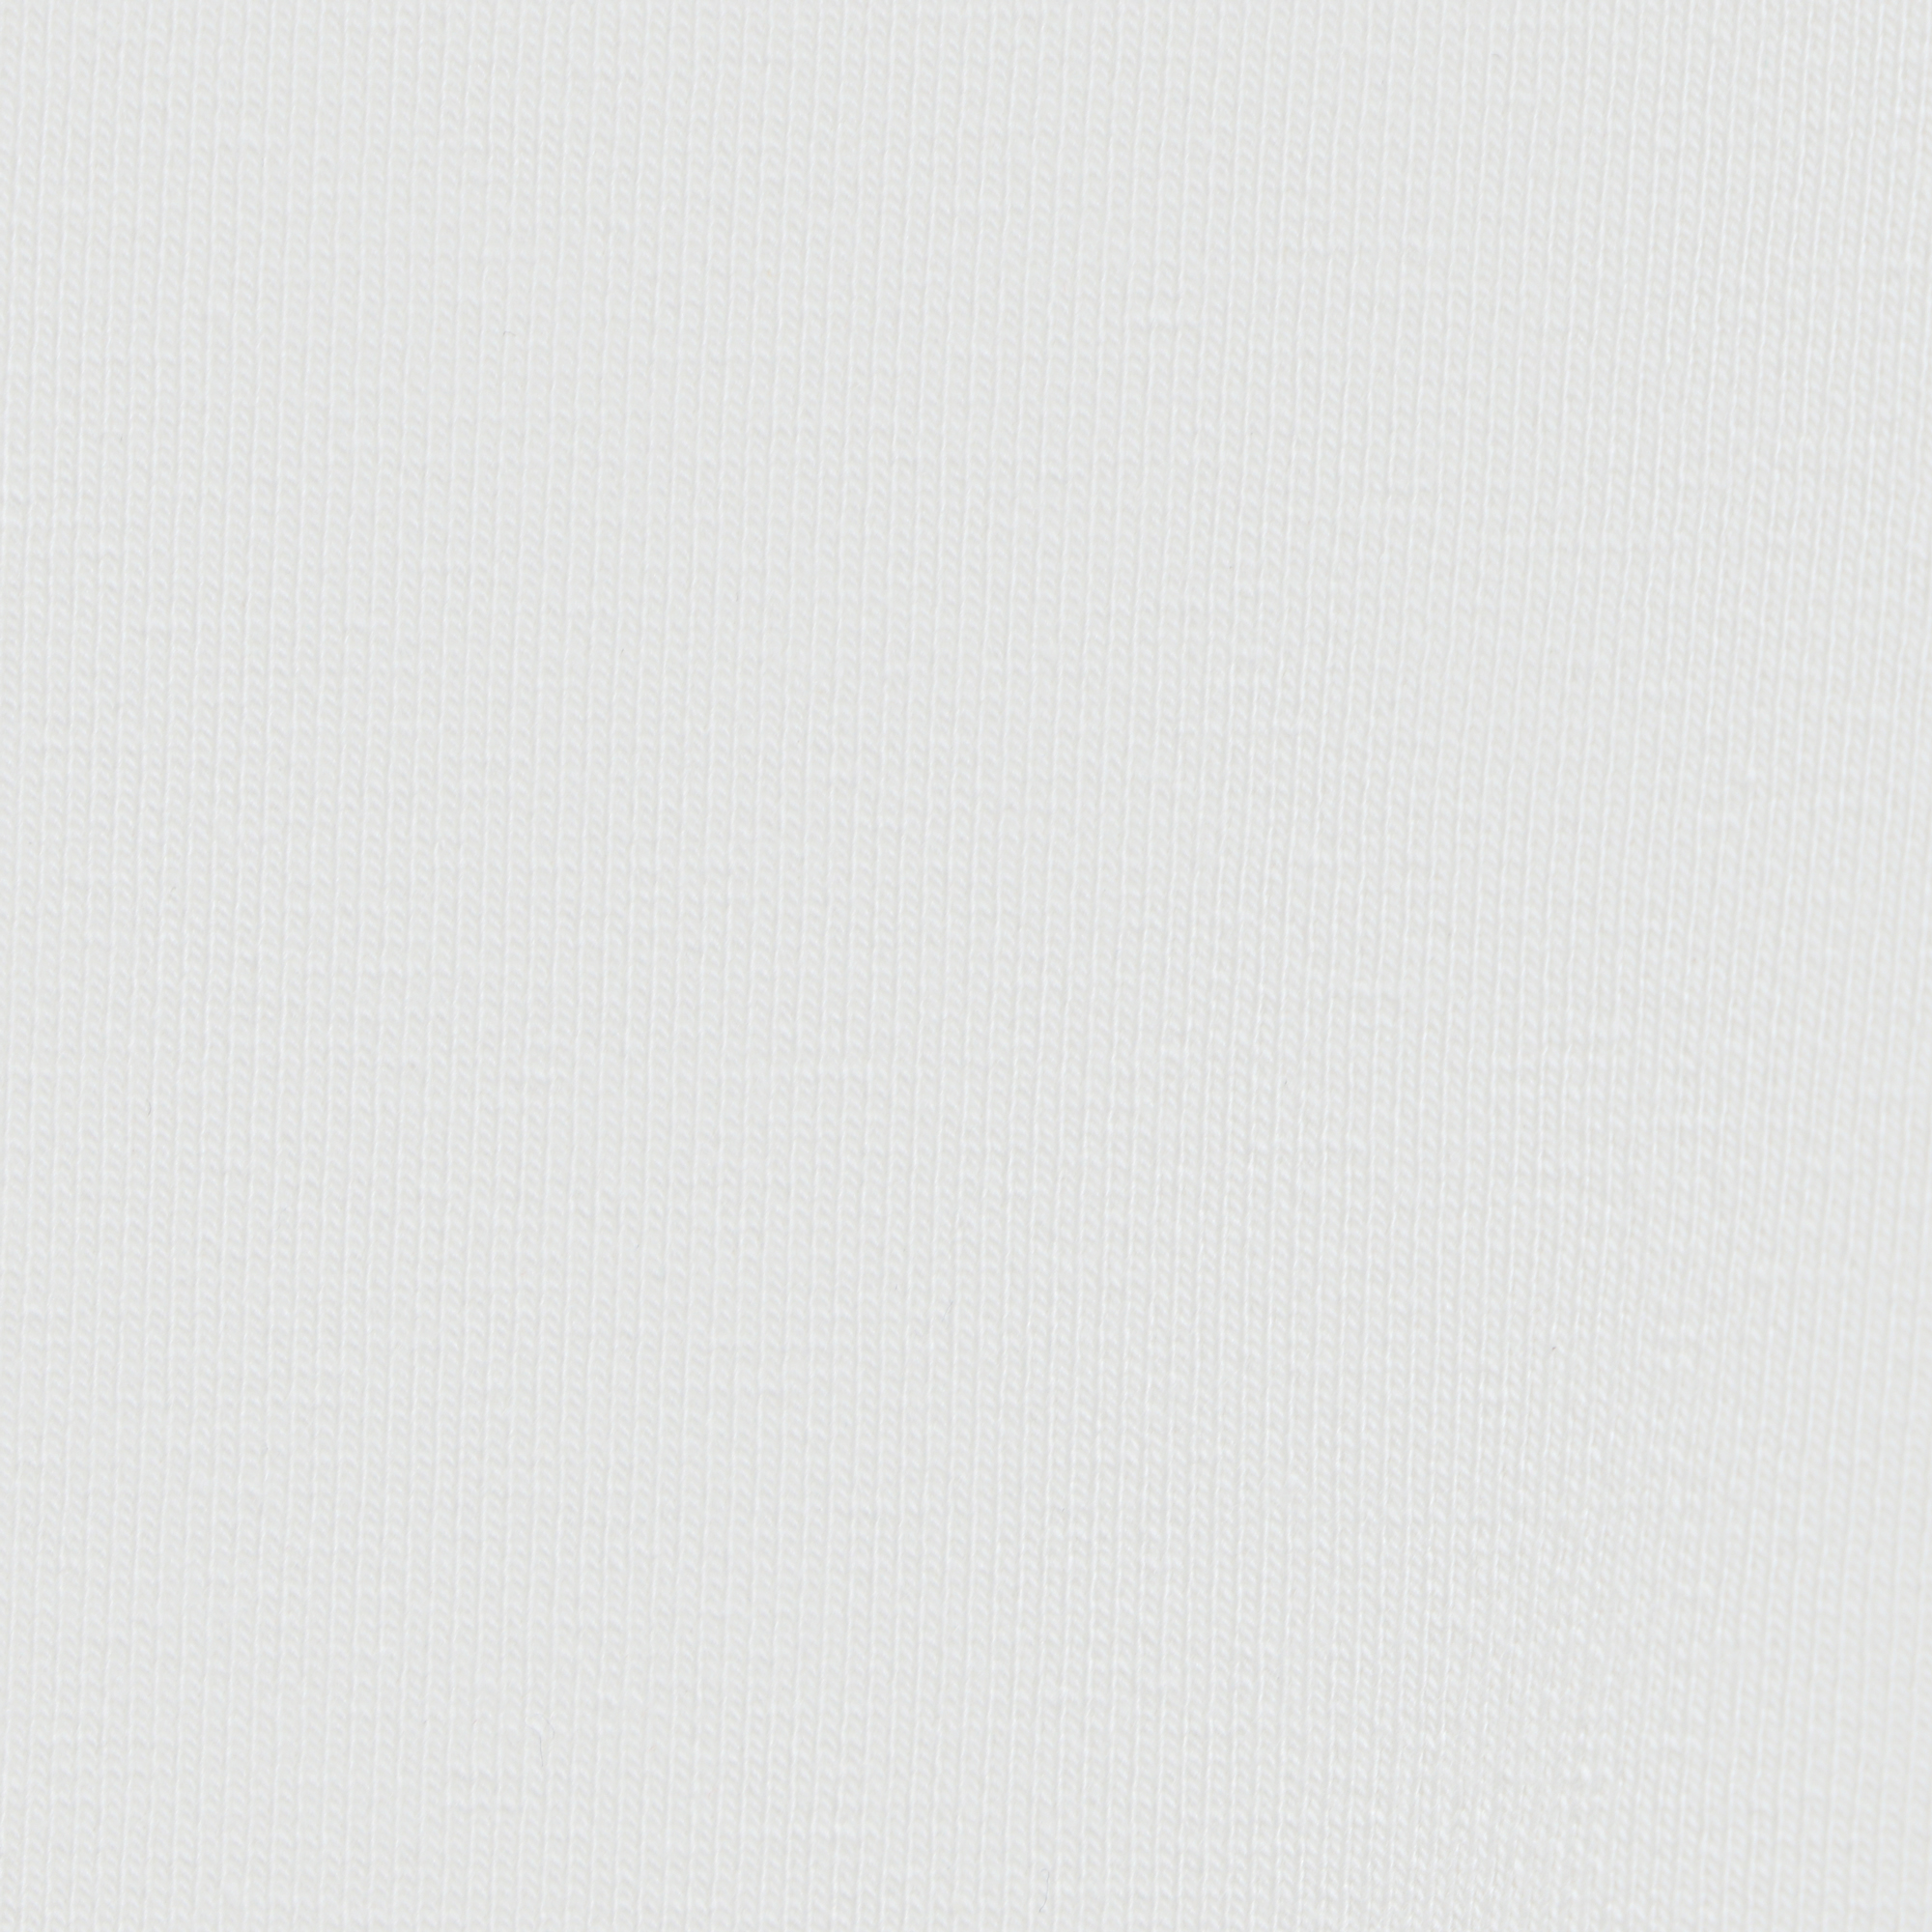 Мужская толстовка Birlik белая с капюшоном, цвет белый, размер XXXL - фото 3